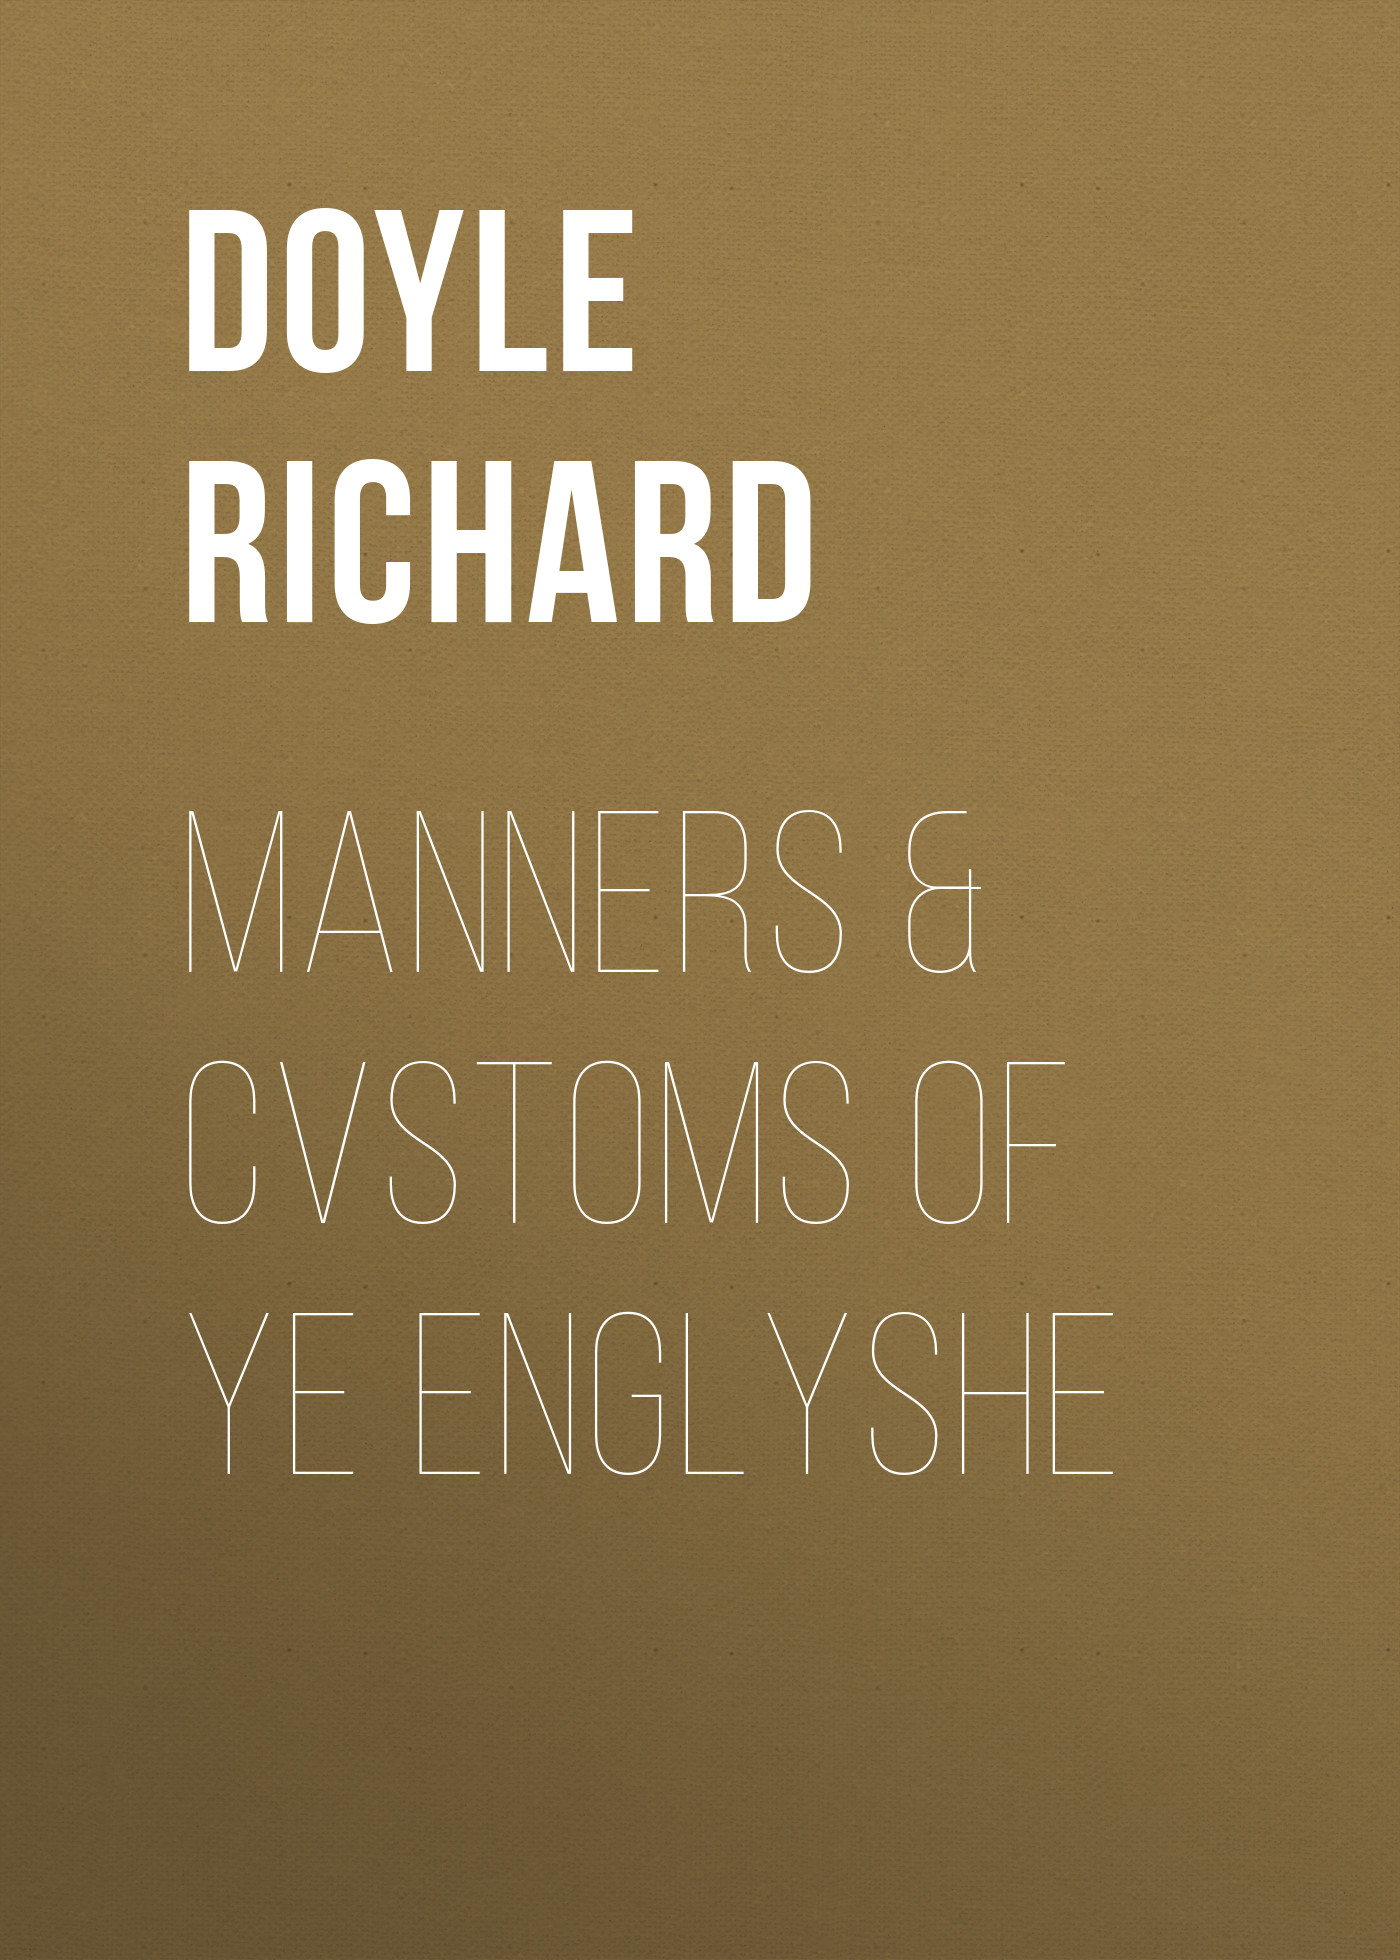 Книга Manners & Cvstoms of ye Englyshe из серии , созданная Richard Doyle, может относится к жанру Зарубежная старинная литература, Зарубежная классика, Зарубежные детские книги. Стоимость электронной книги Manners & Cvstoms of ye Englyshe с идентификатором 24621045 составляет 0 руб.